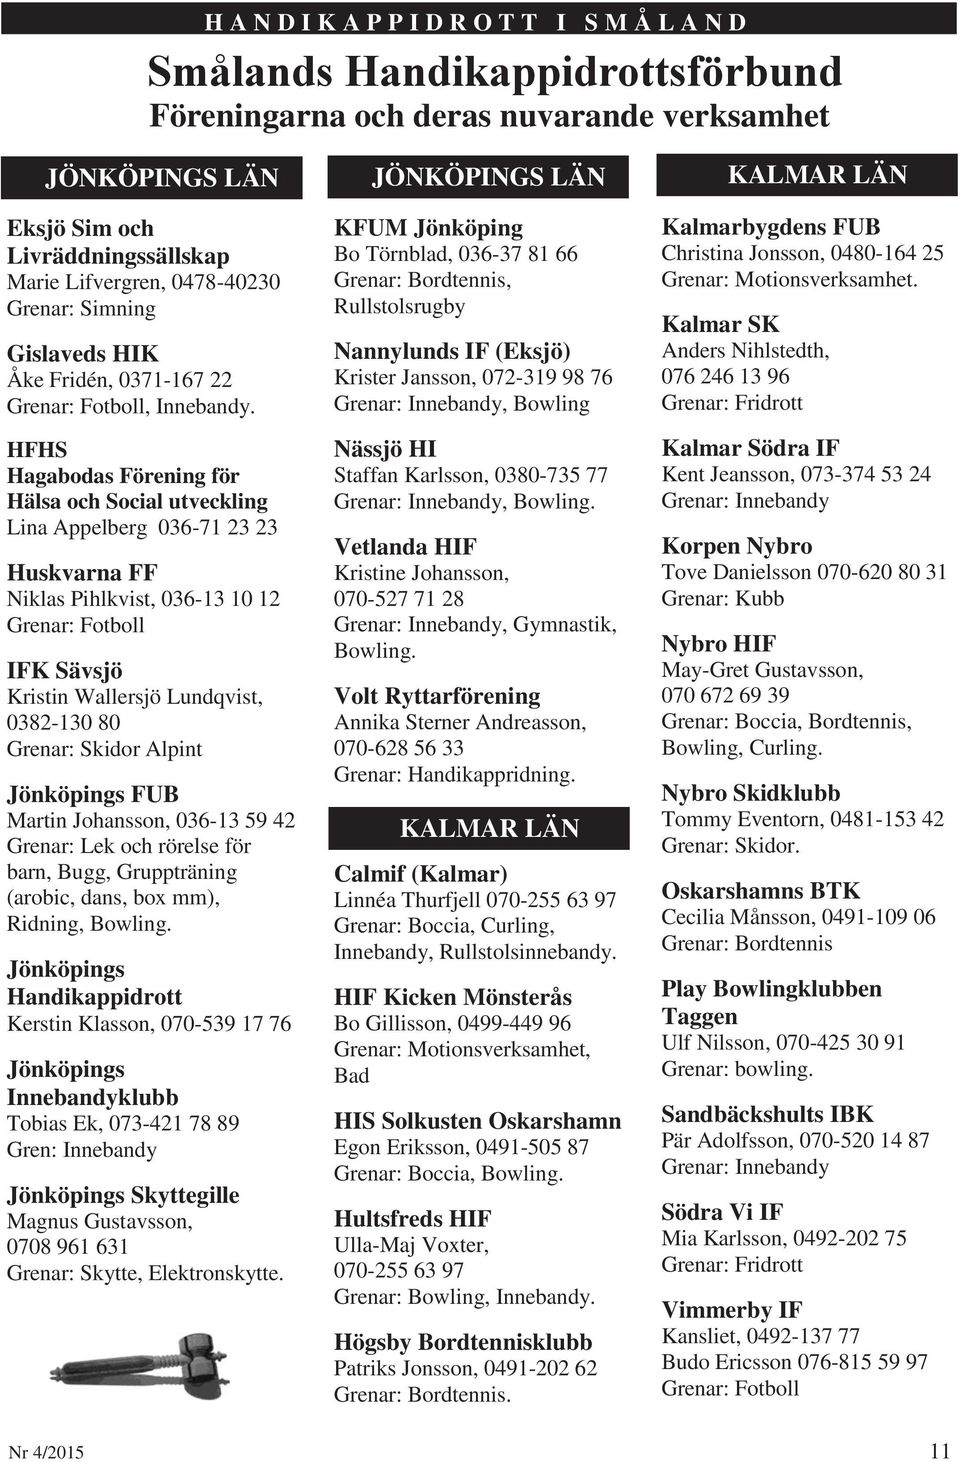 HFHS Hagabodas Förening för Hälsa och Social utveckling Lina Appelberg 036-71 23 23 Huskvarna FF Niklas Pihlkvist, 036-13 10 12 Grenar: Fotboll IFK Sävsjö Kristin Wallersjö Lundqvist, 0382-130 80